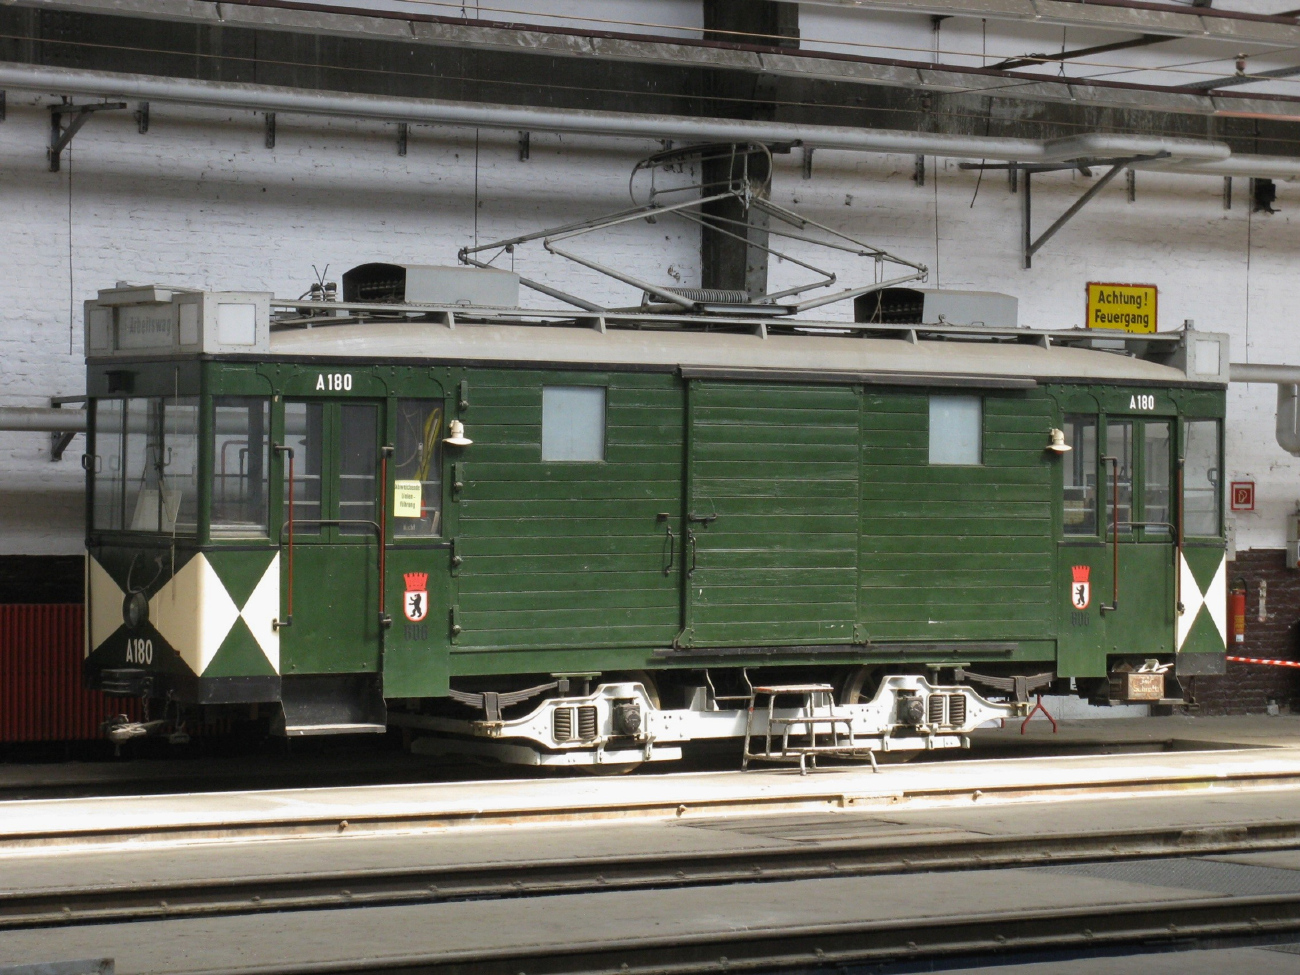 Berlin, Berolina 2-axle motor car — A180